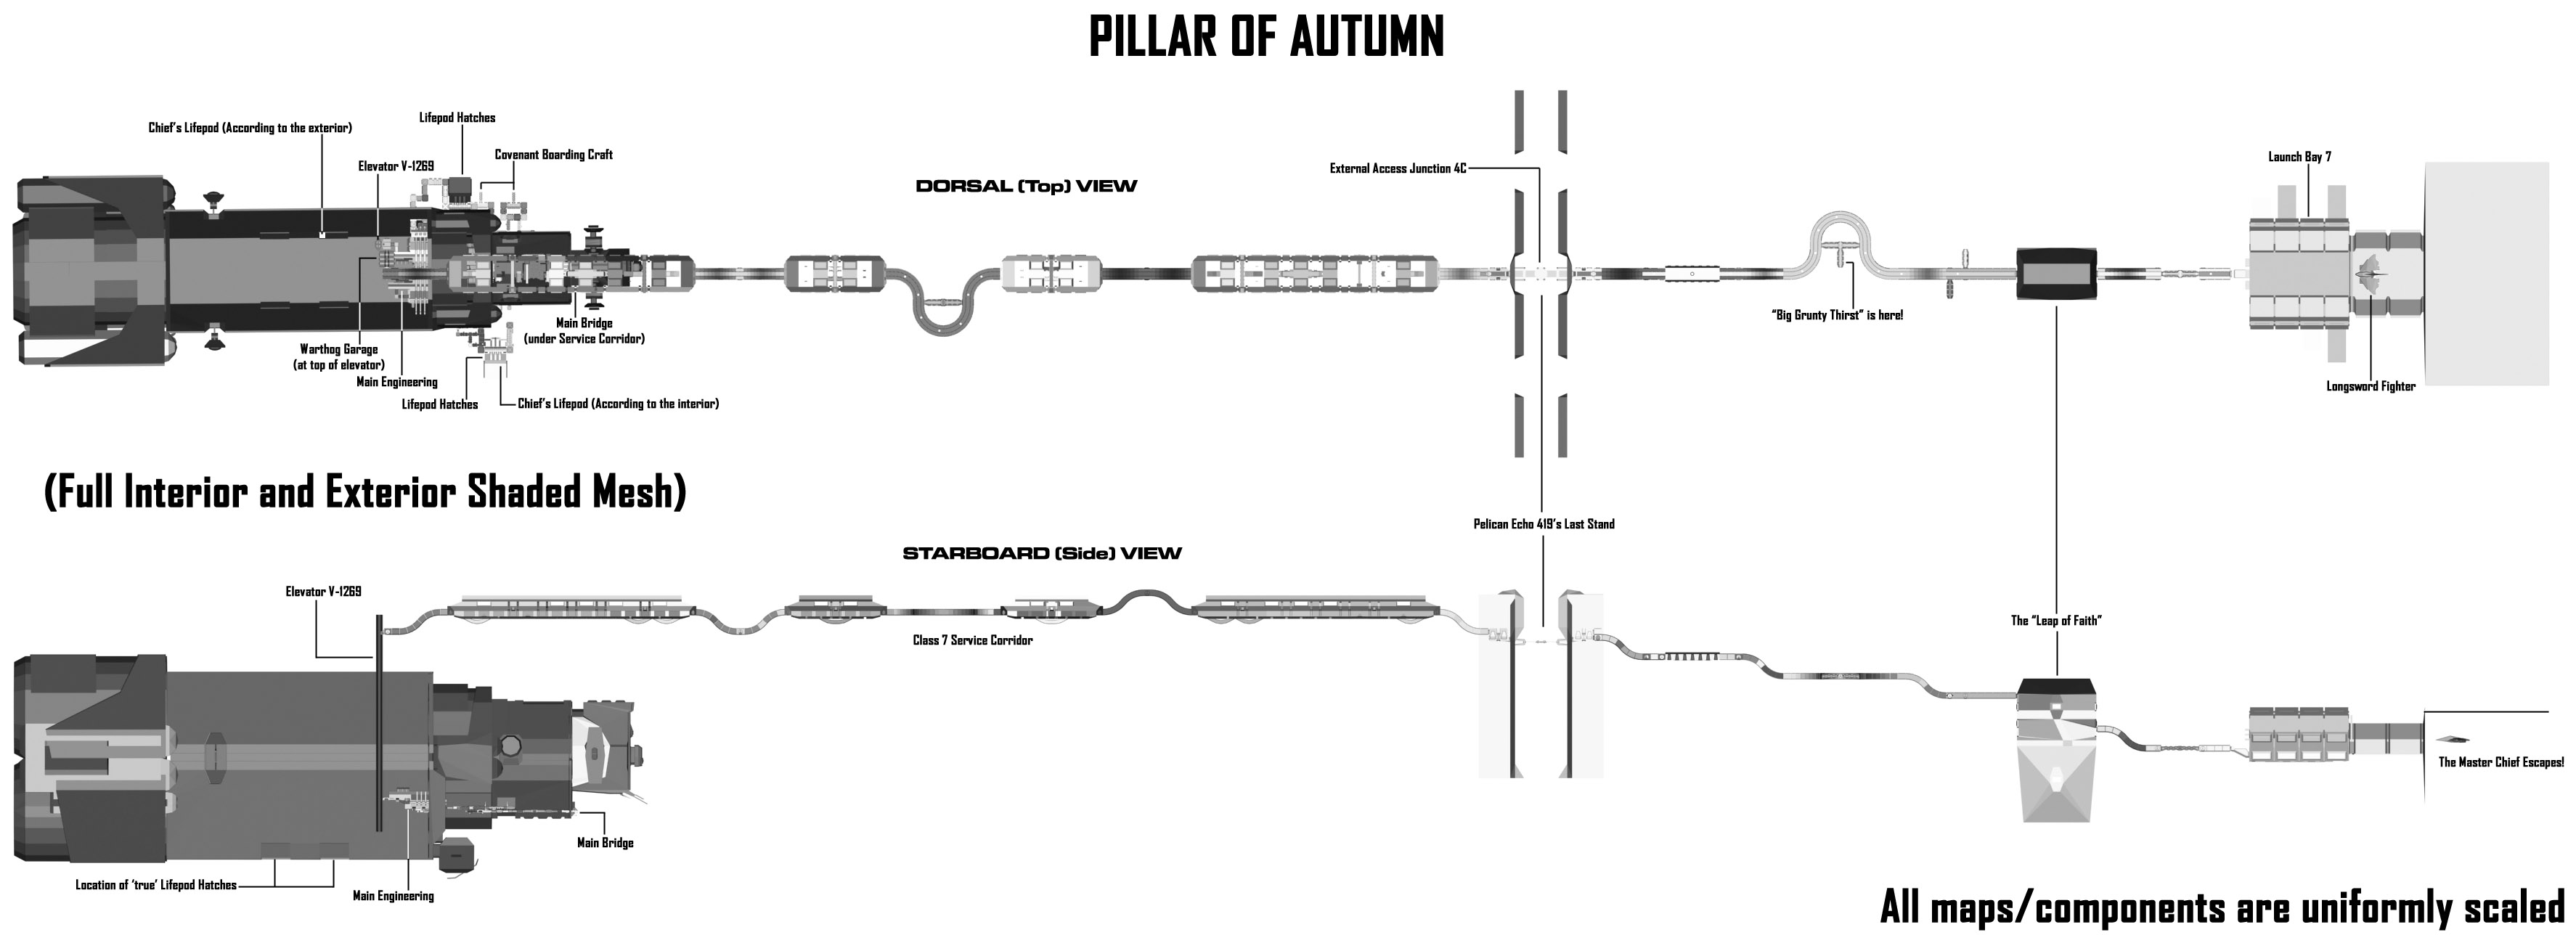 halo pillar of autumn map